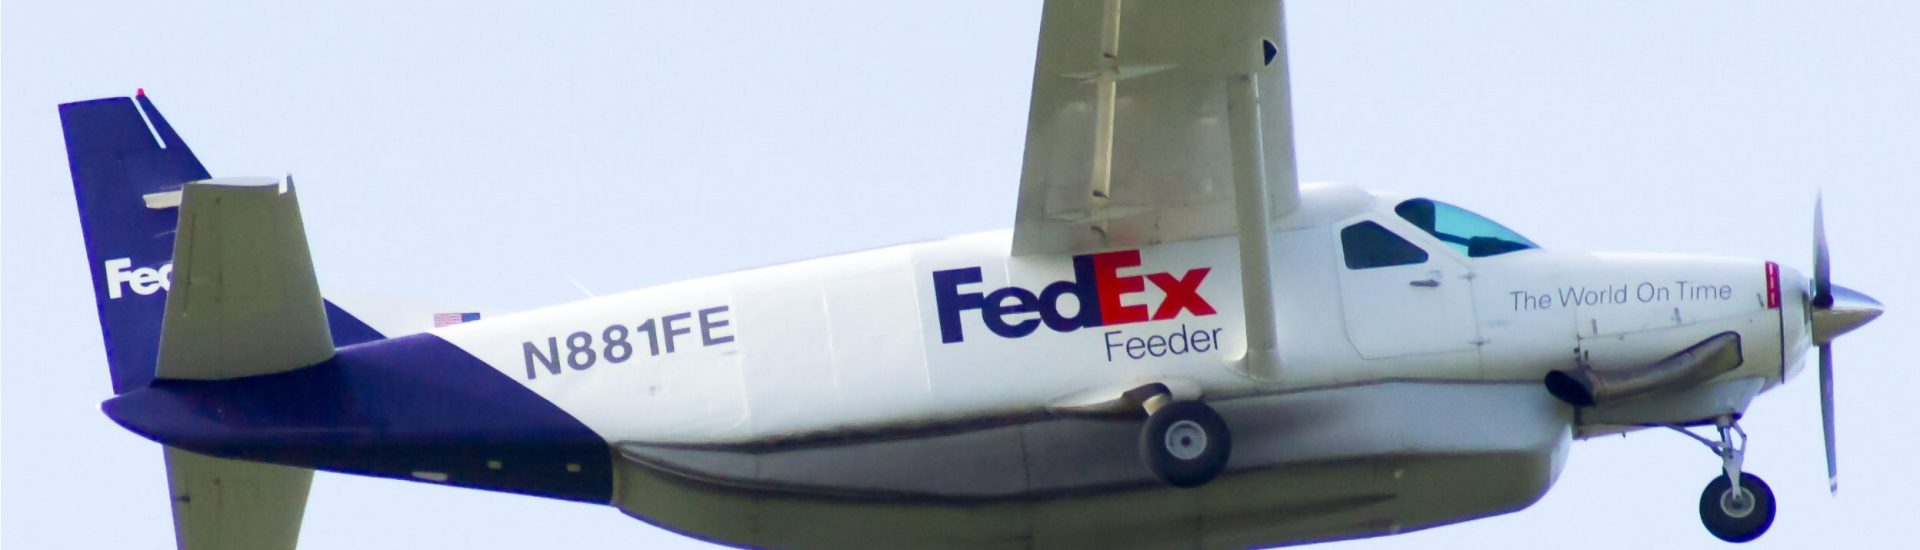 Cessna 208B Fedex Feeder N881FE